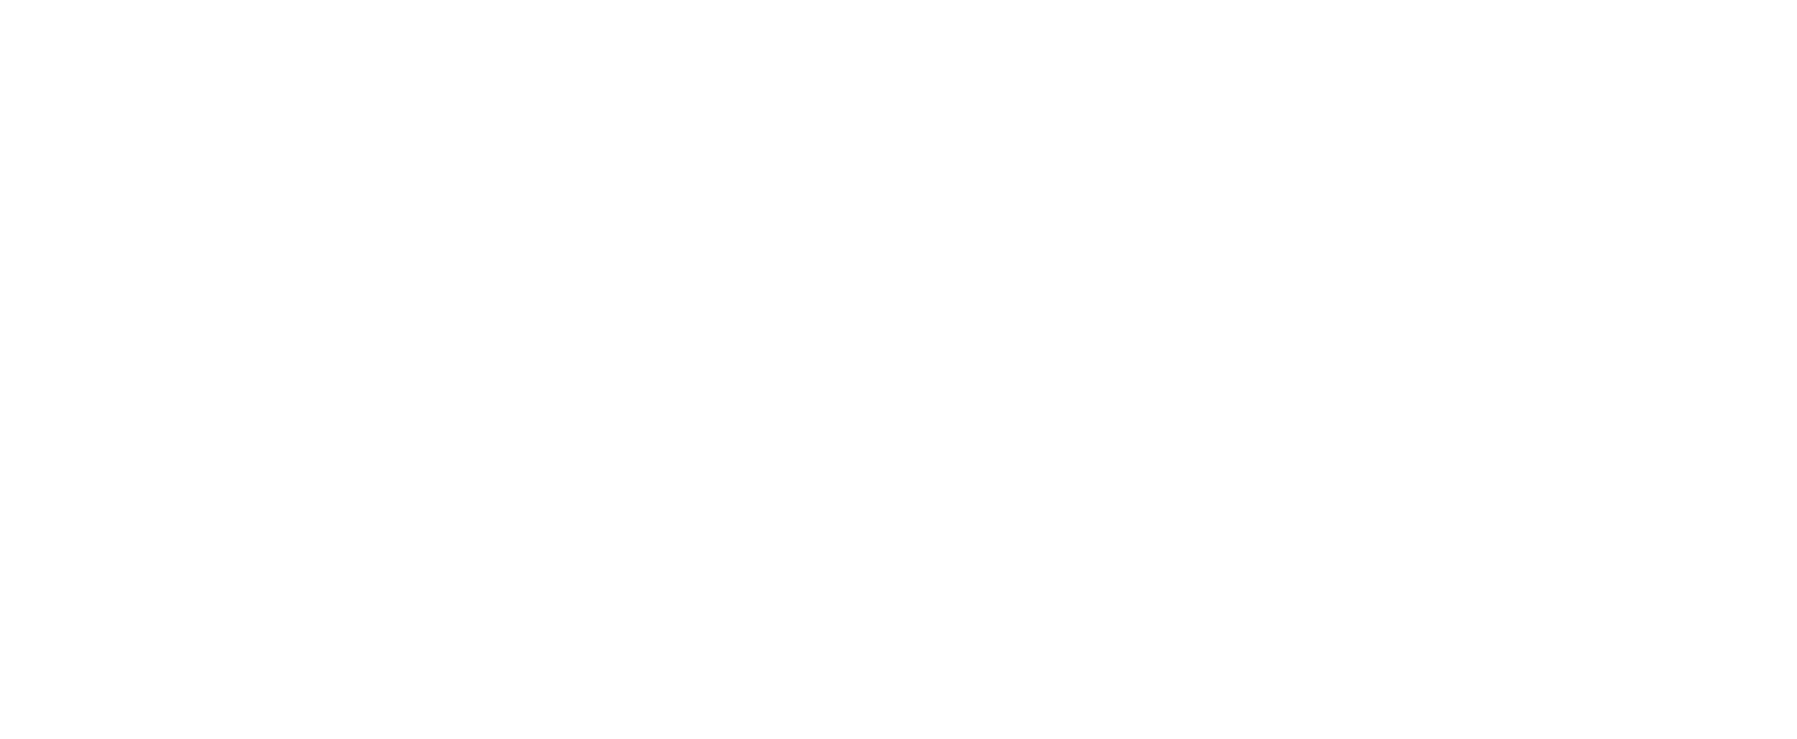 The Inn at Ocean's Edge